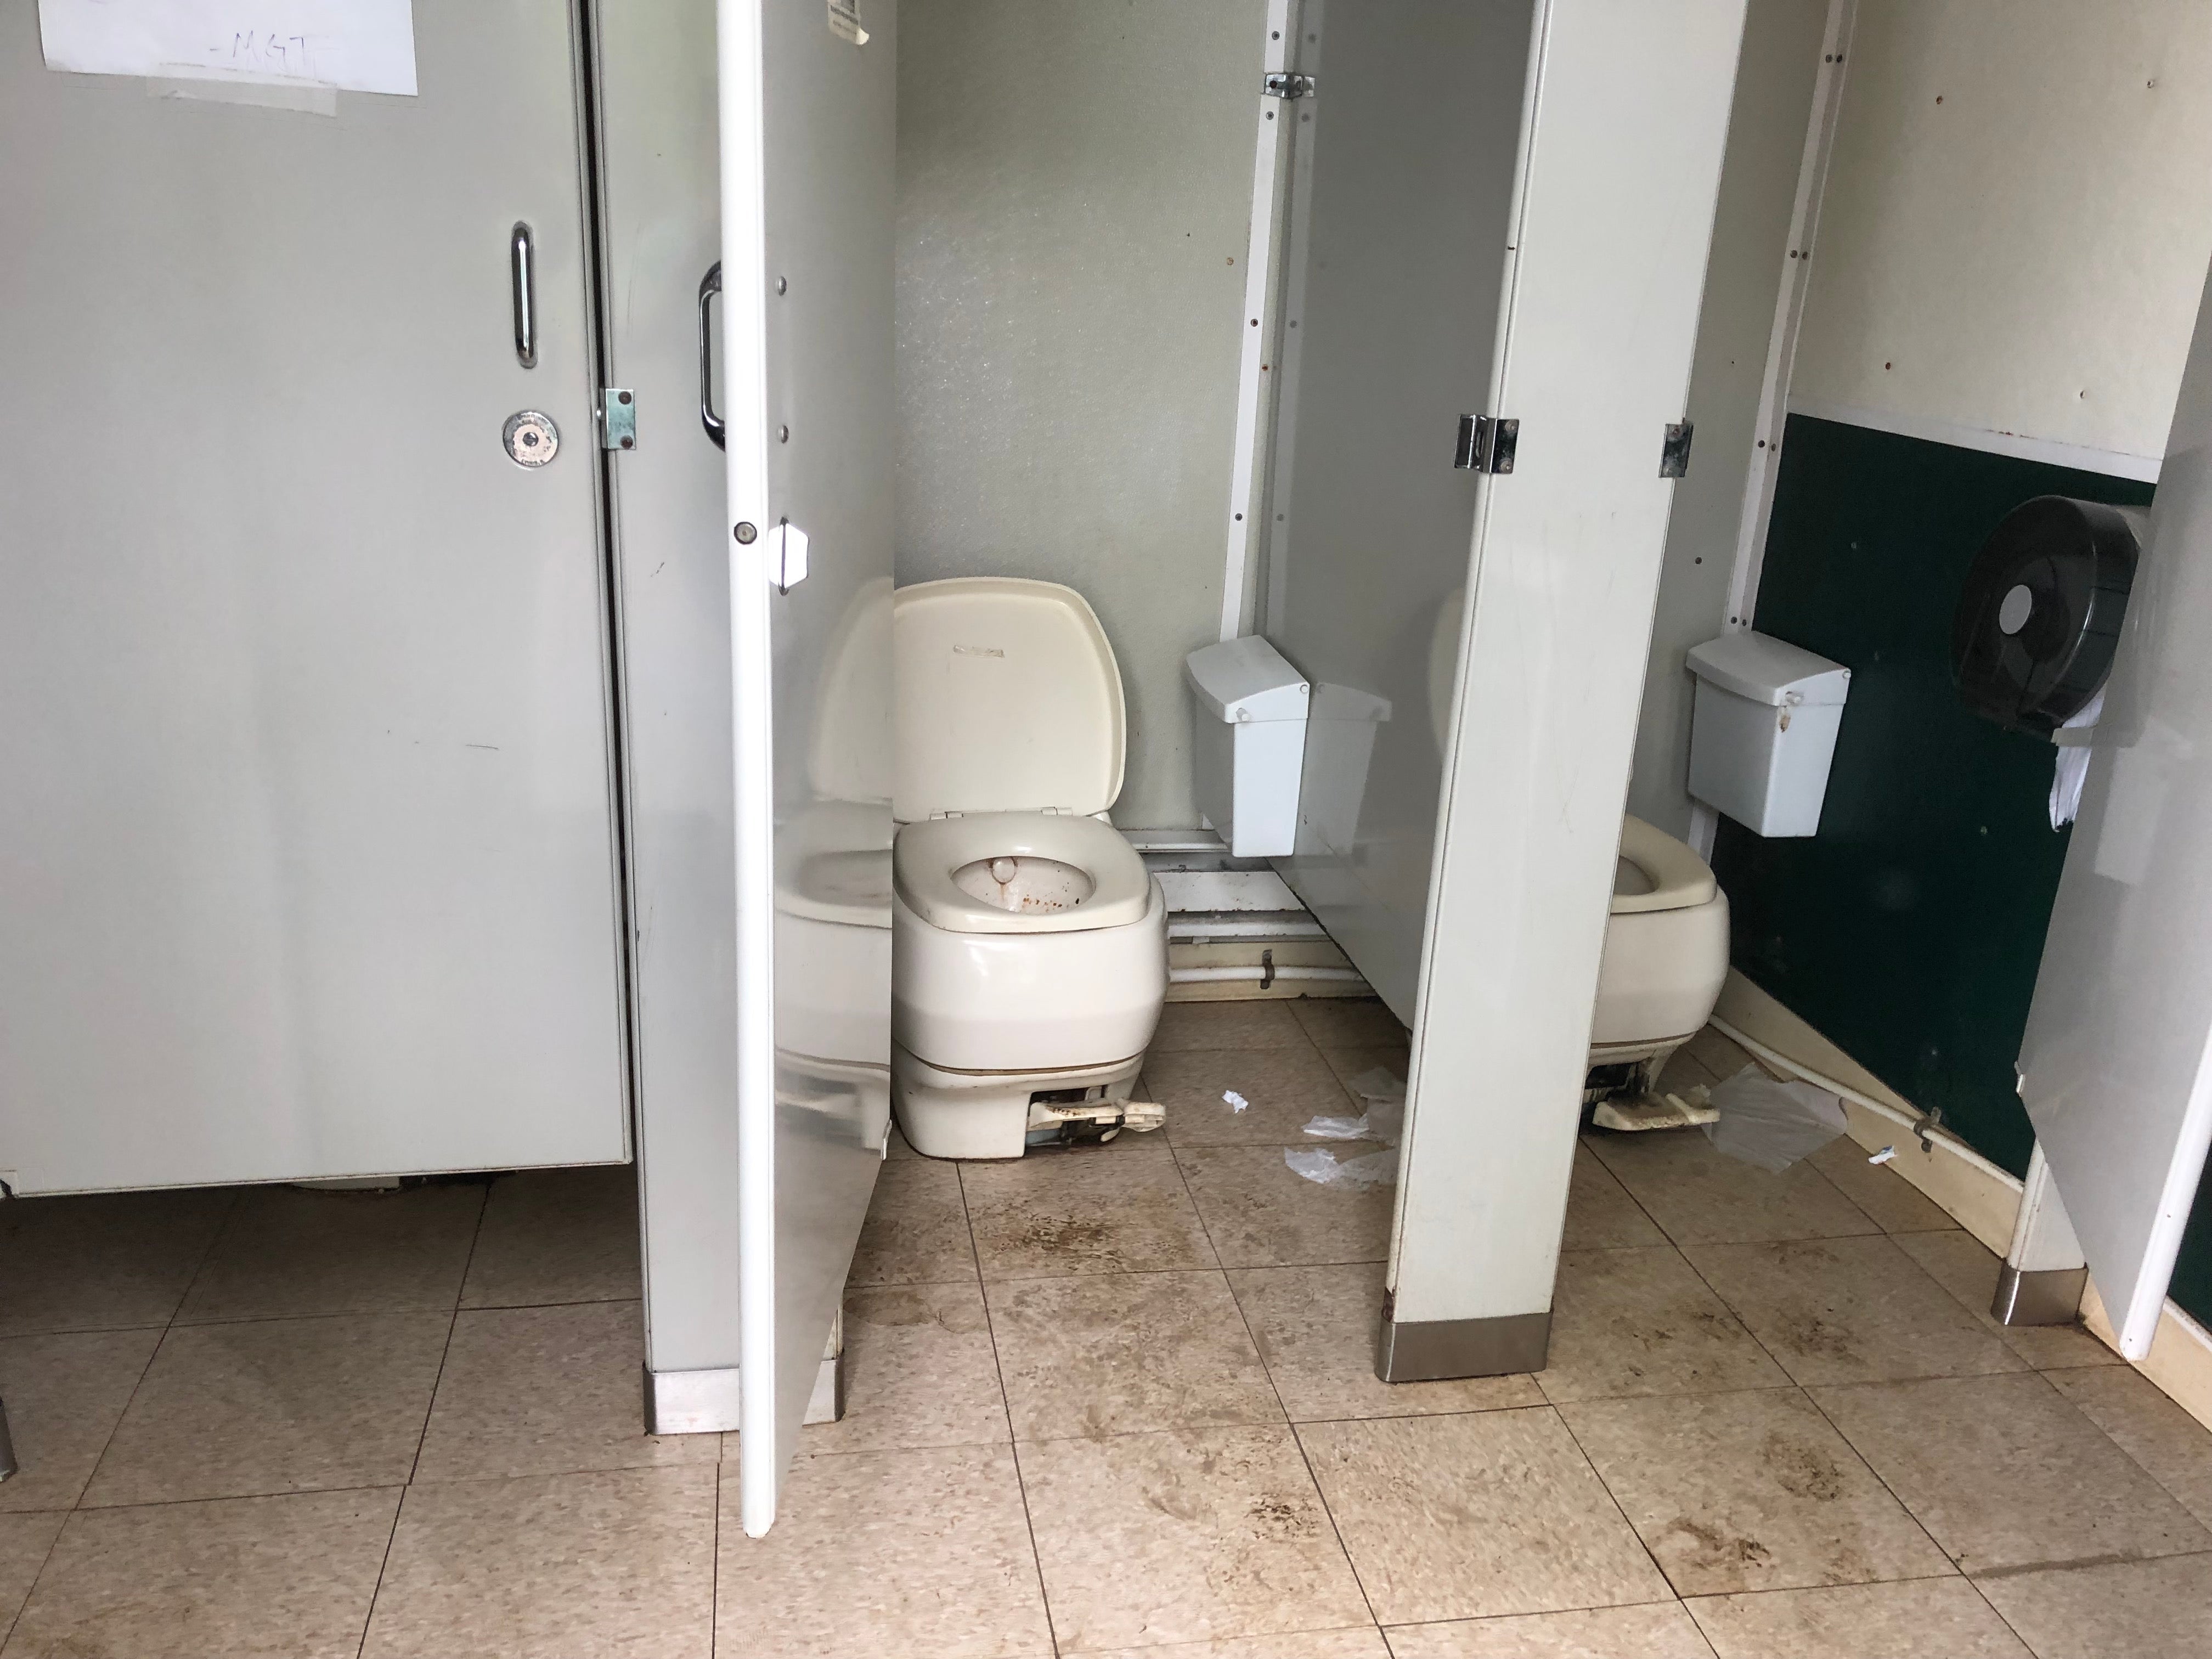 Disgusting bathrooms